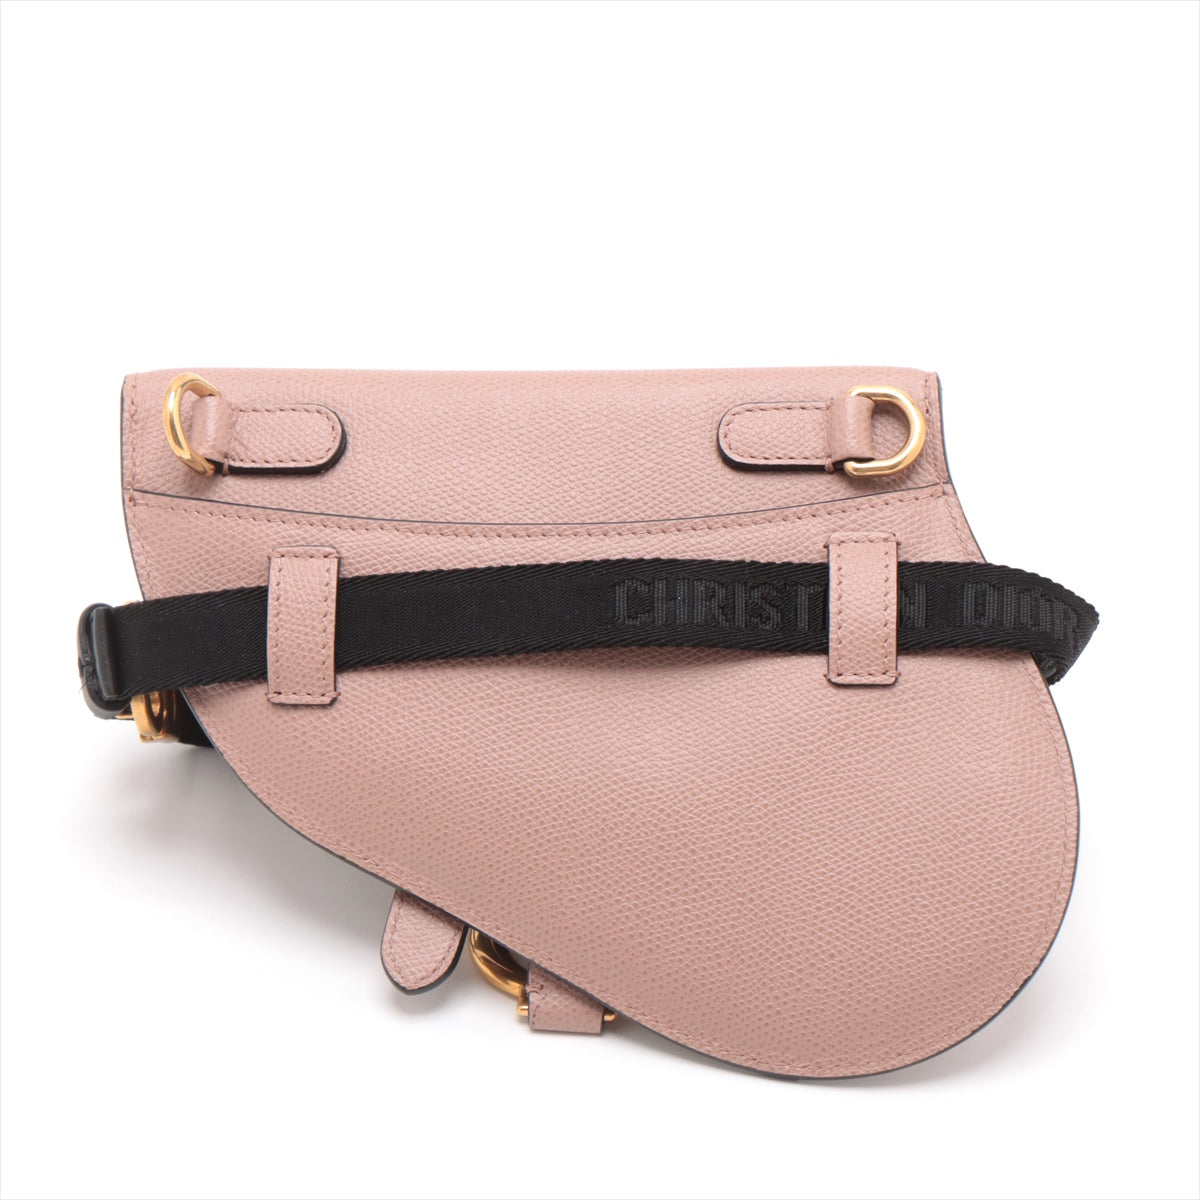 Christian Dior Saddle Leather Sling backpack Pink